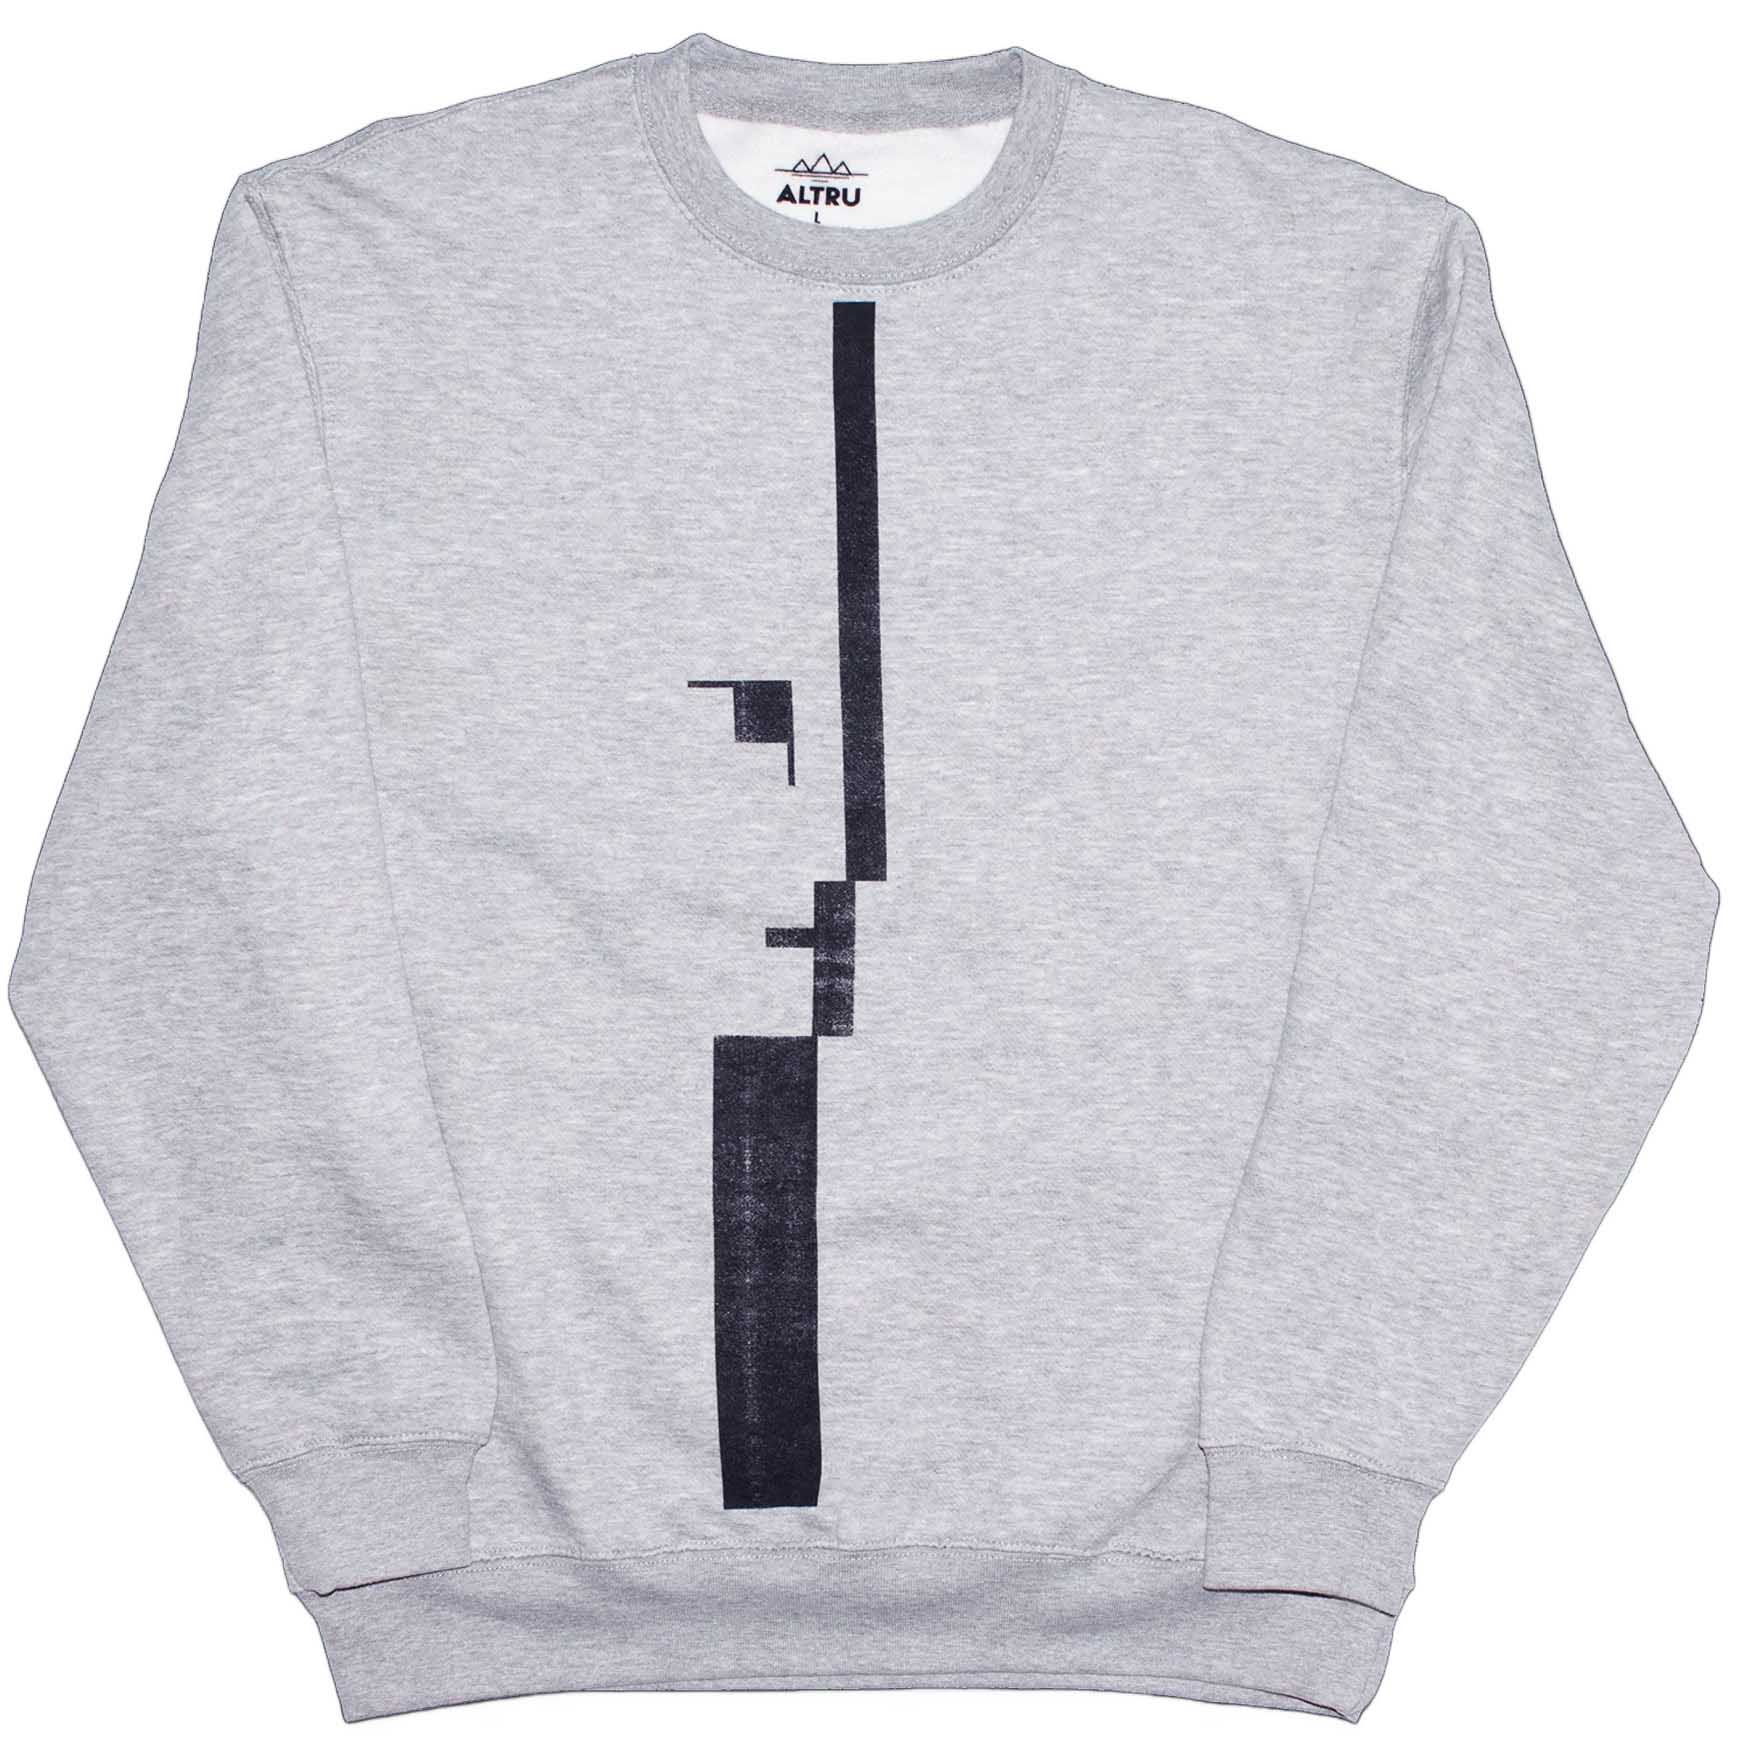 Bauhaus graphic sweatshirt